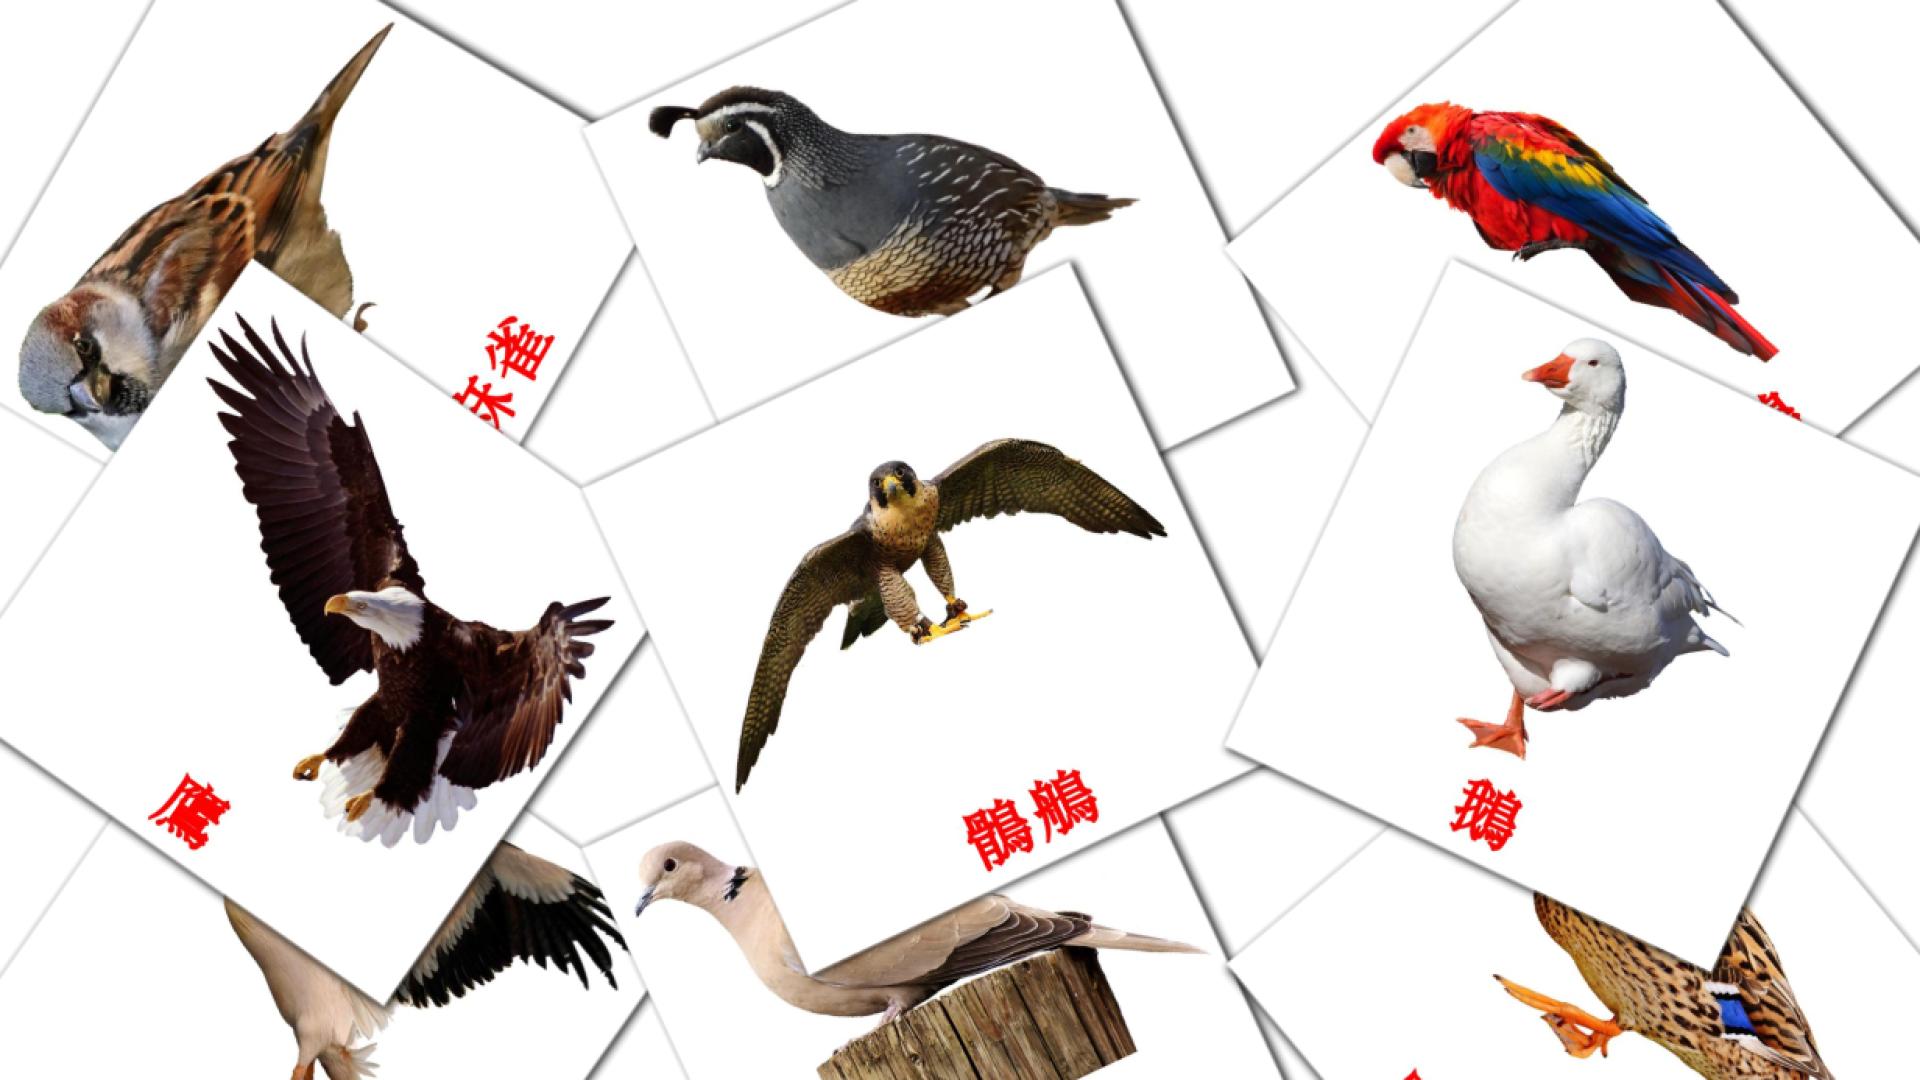 鳥兒 chinese(Traditional) vocabulary flashcards